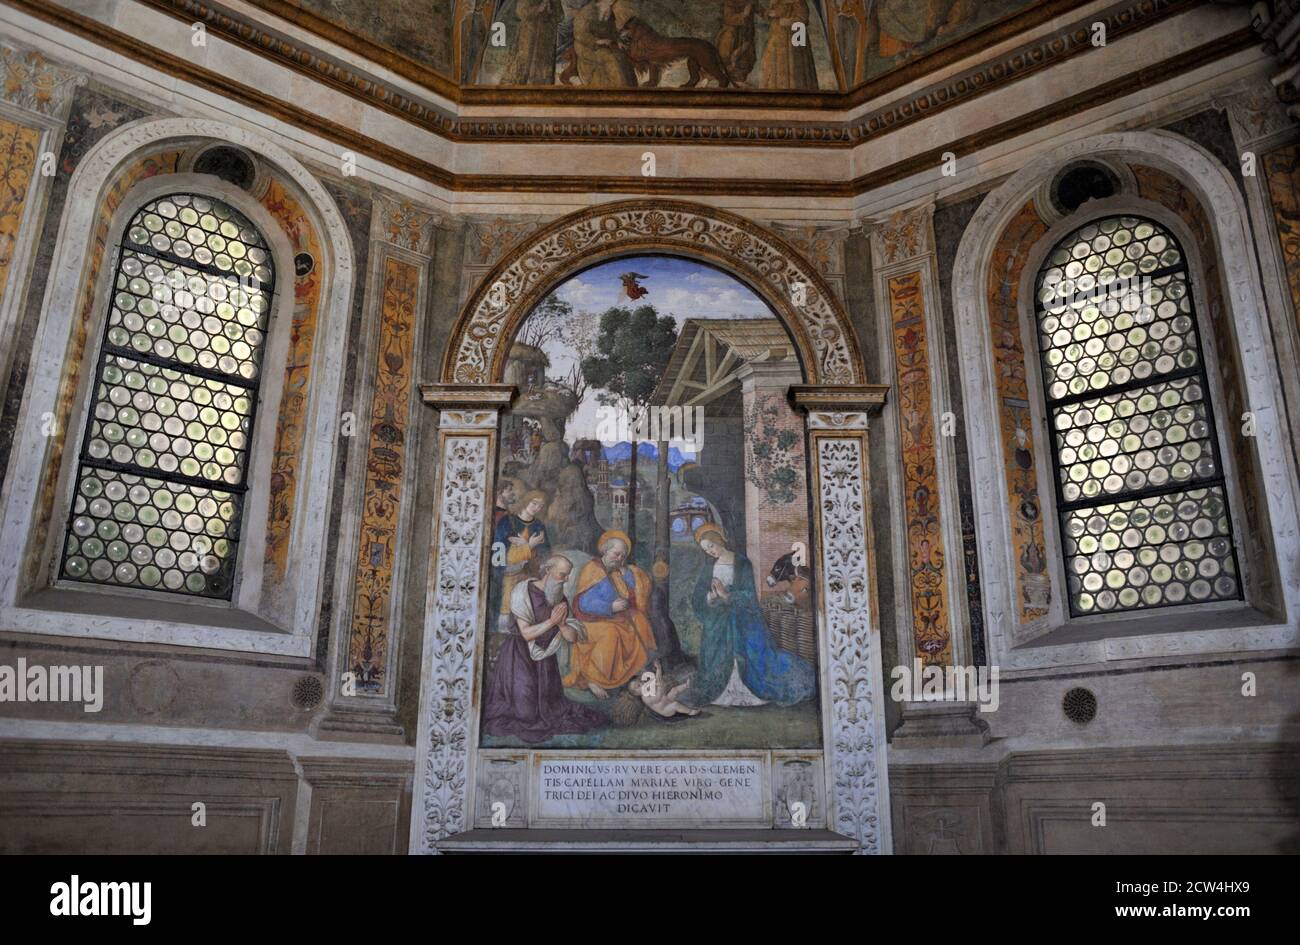 Italy, Rome, church of Santa Maria del Popolo interior, Cappella della Rovere, Pinturicchio fresco “Natività con San Girolamo”  (AD 1488-1490) Stock Photo